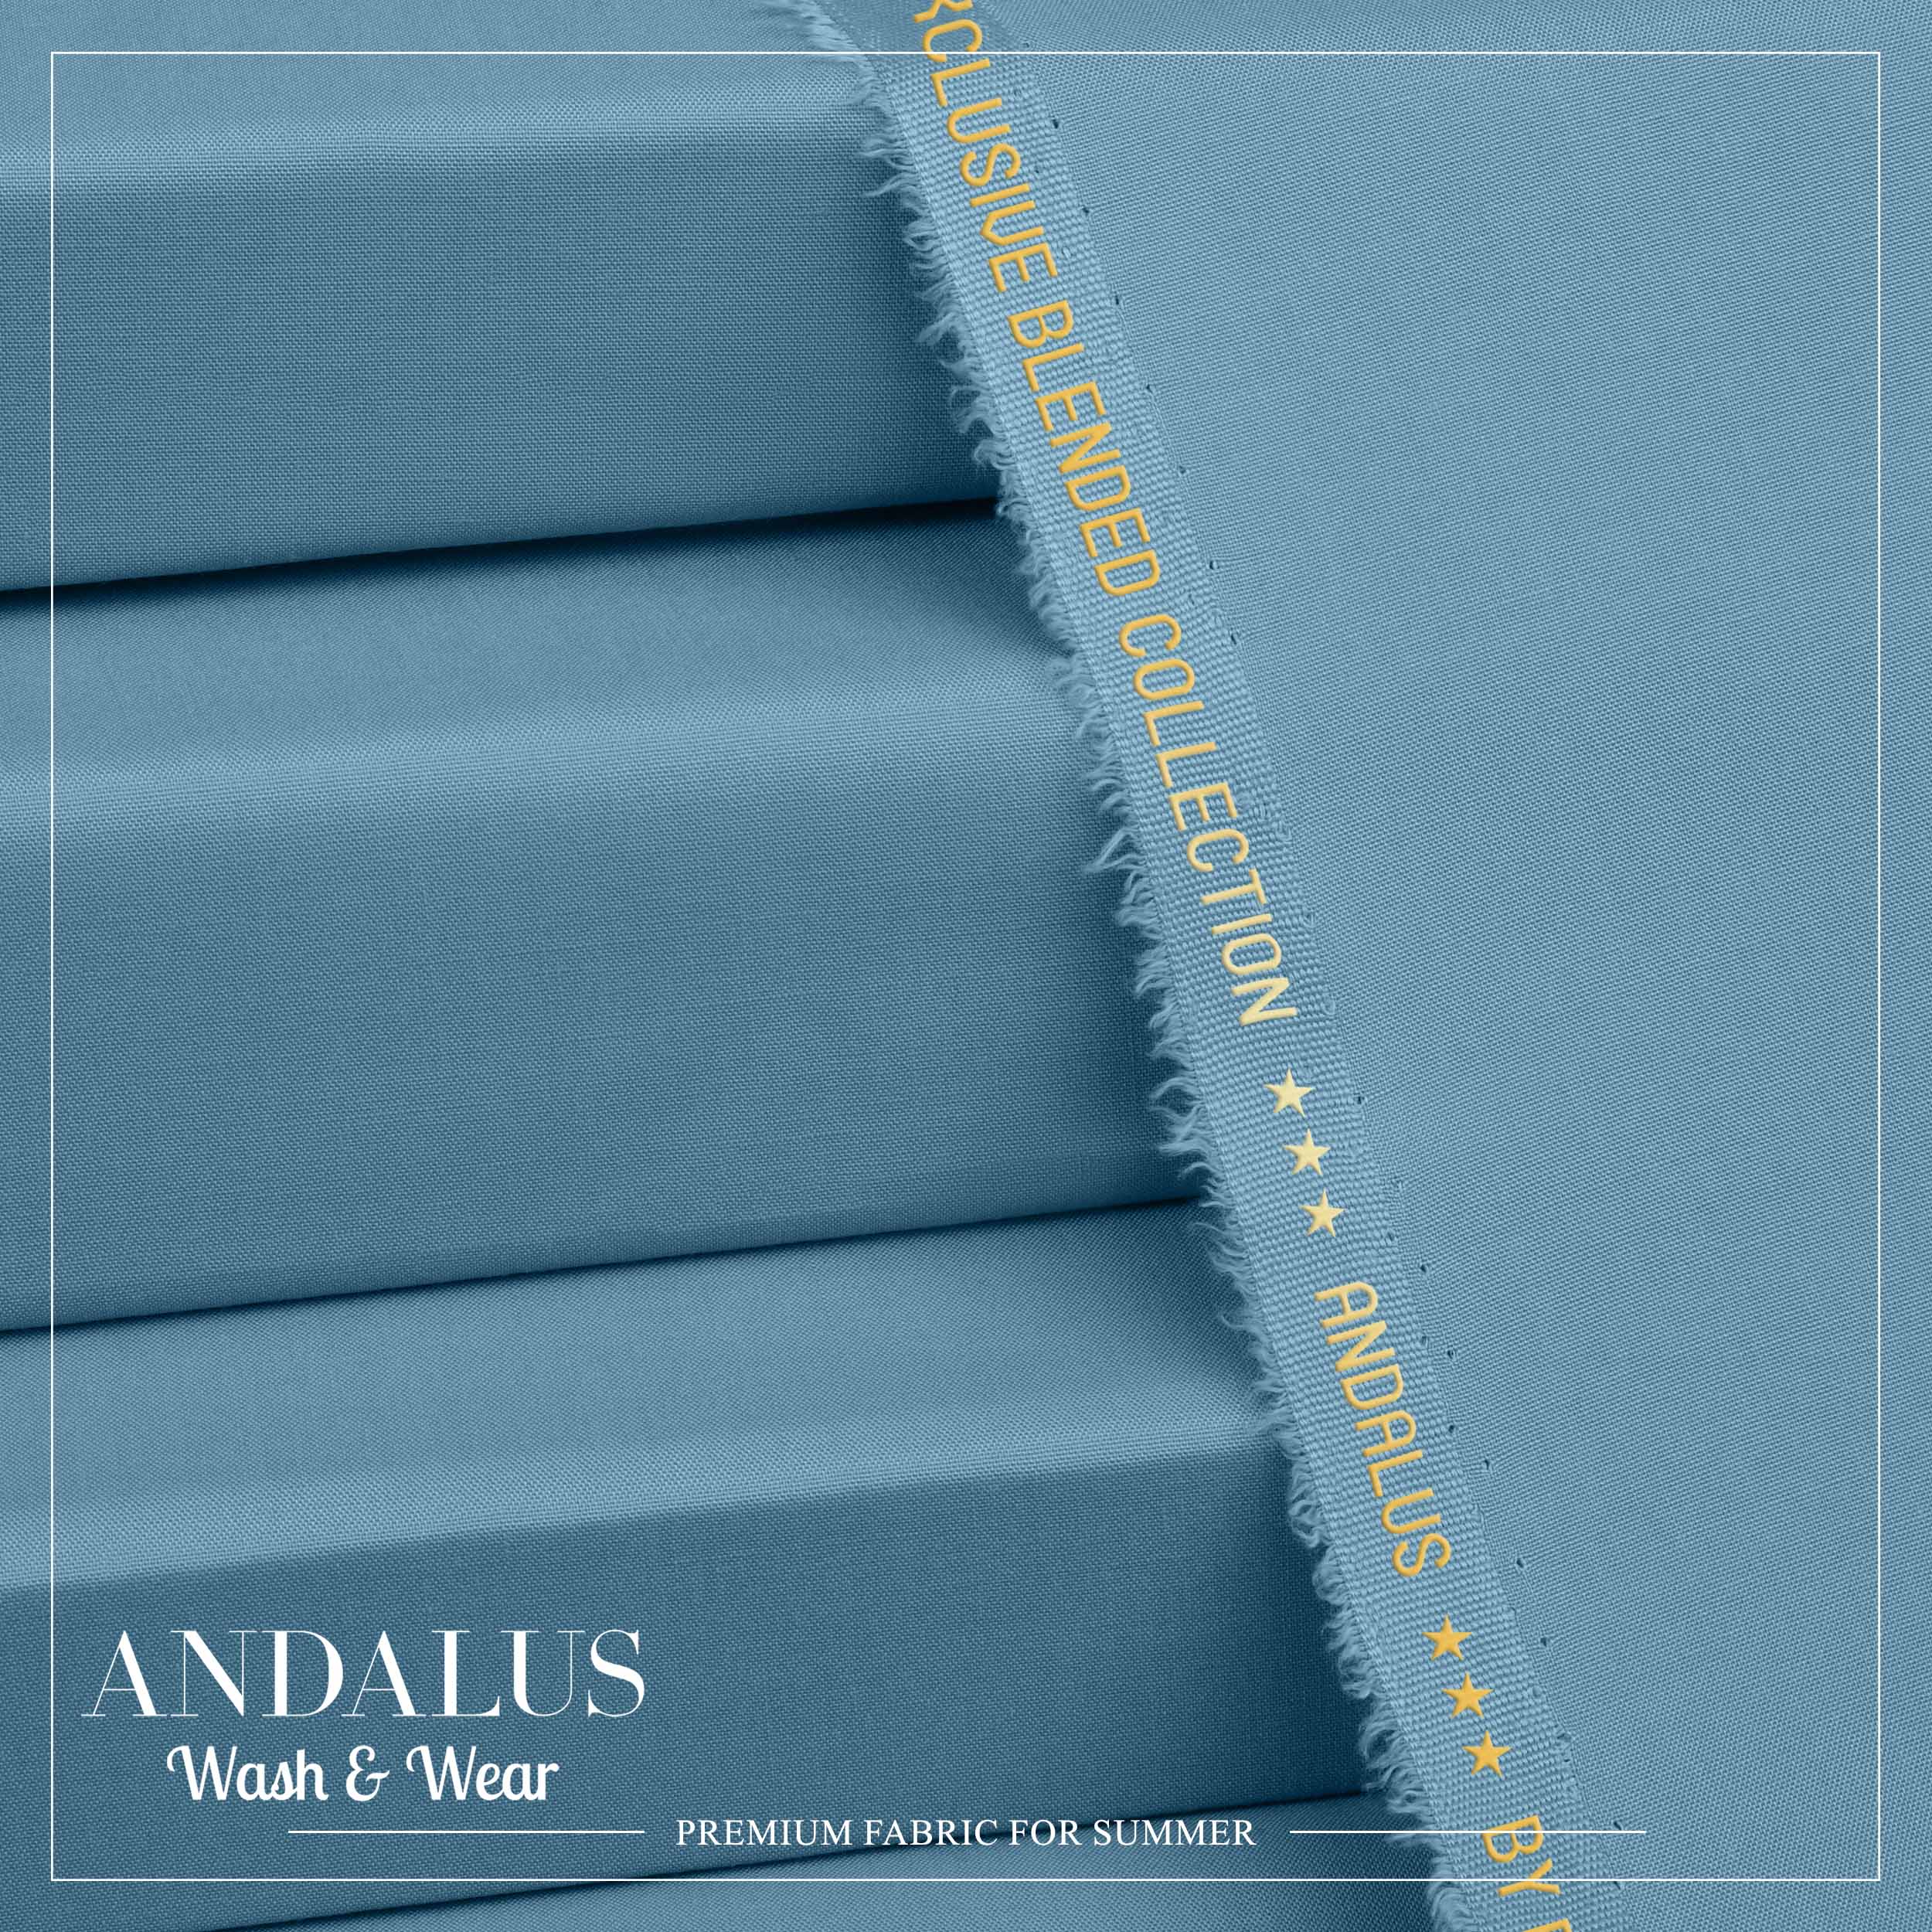 Iceberg - Andalus - Wash & Wear Fabric